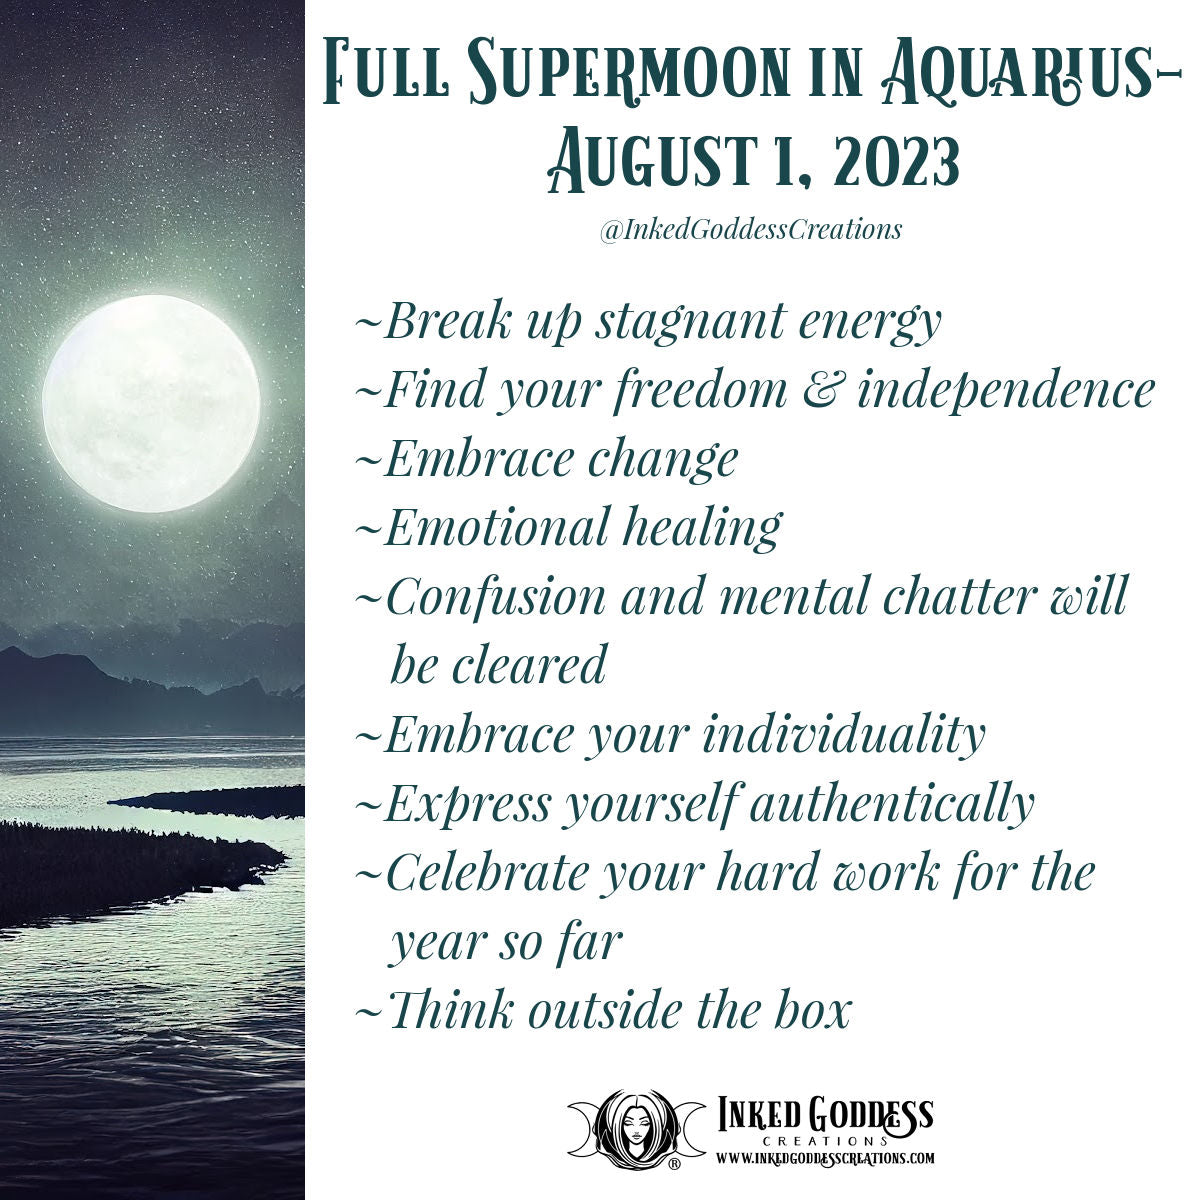 Full Supermoon in Aquarius- August 1, 2023